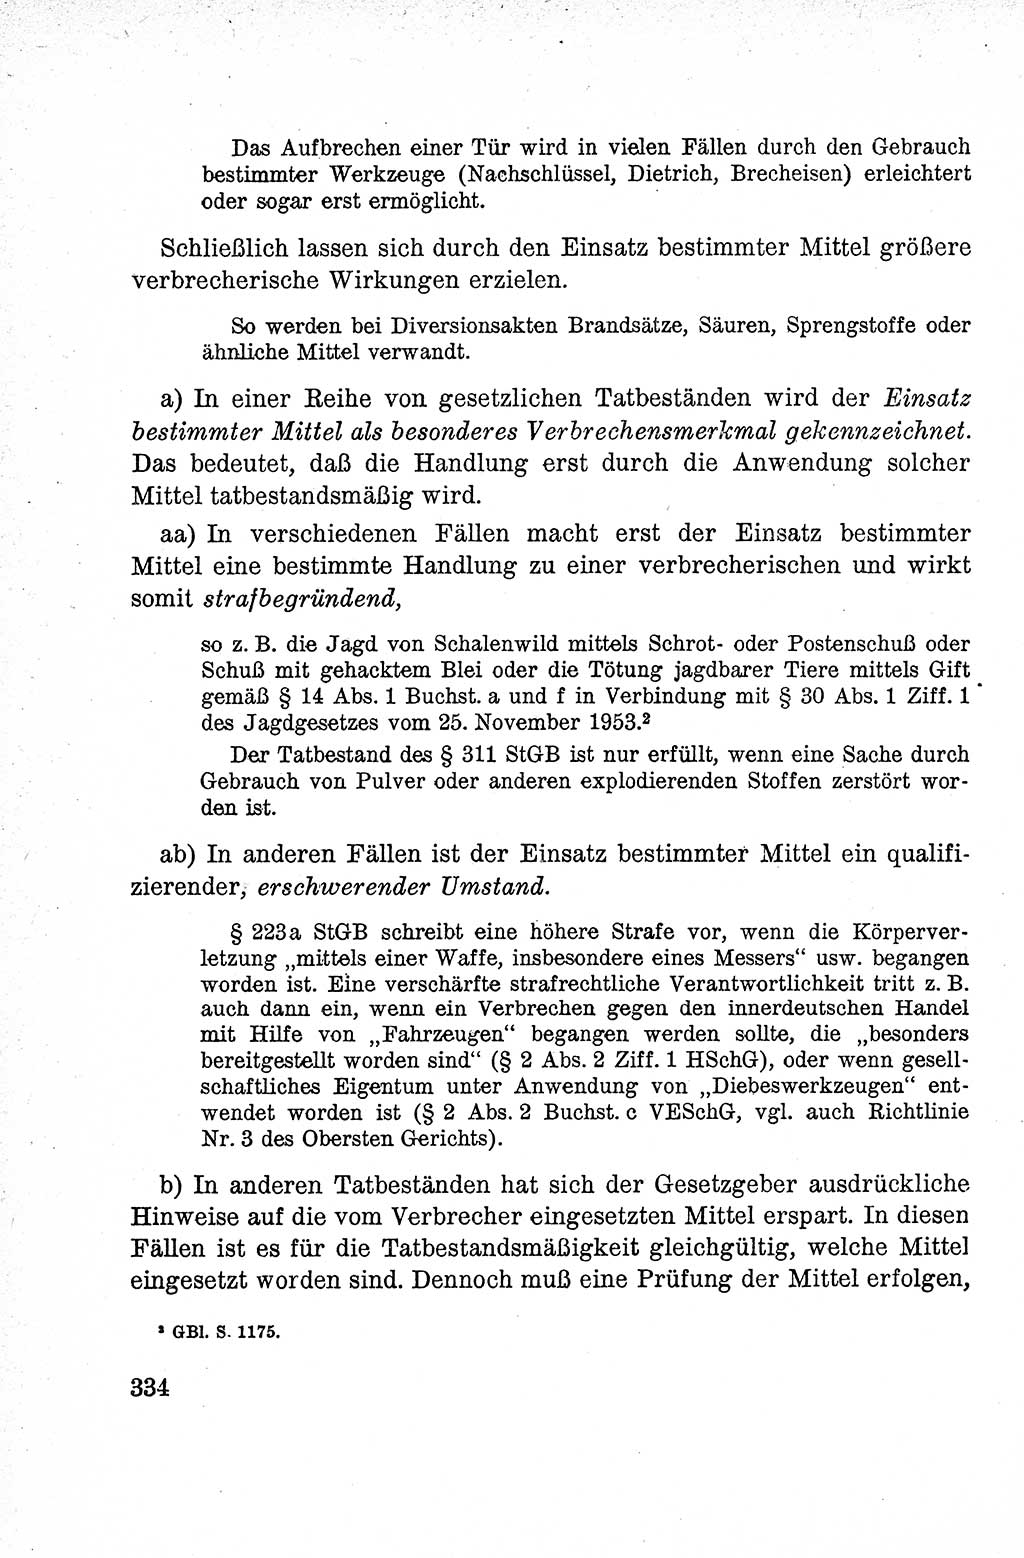 Lehrbuch des Strafrechts der Deutschen Demokratischen Republik (DDR), Allgemeiner Teil 1959, Seite 334 (Lb. Strafr. DDR AT 1959, S. 334)